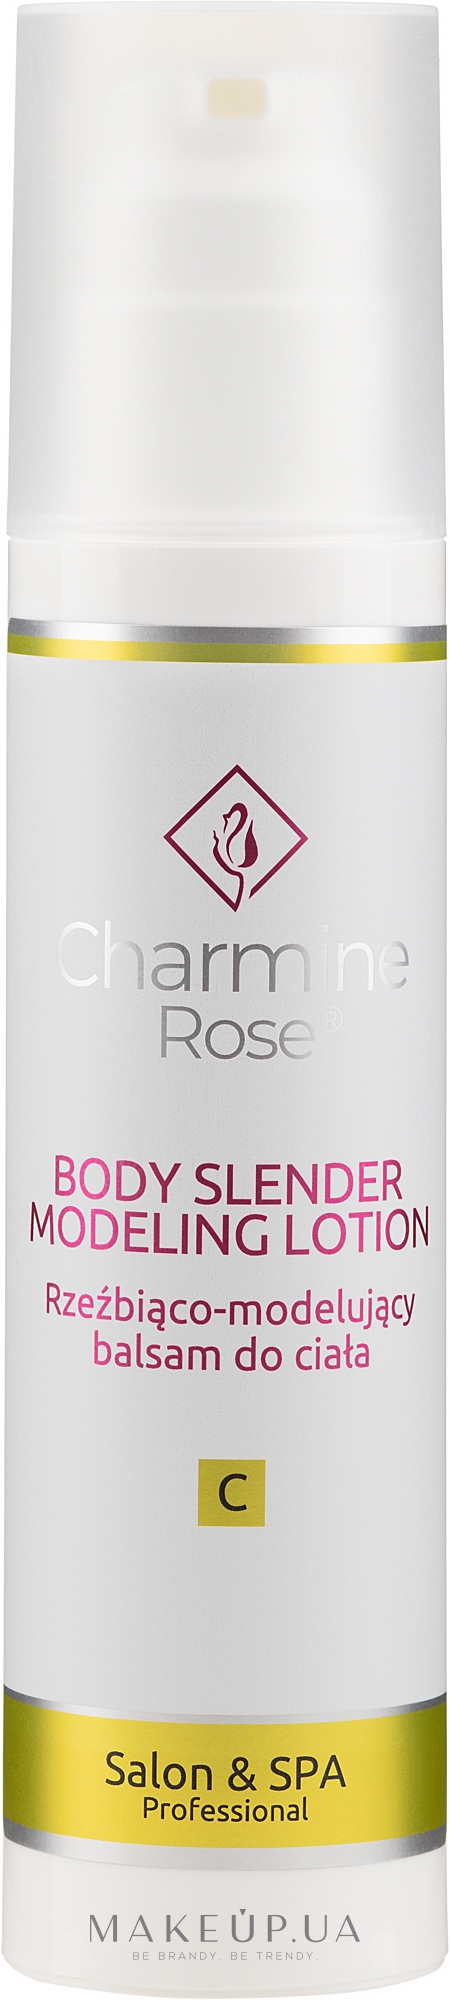 Моделювальний лосьйон для тіла - Charmine Rose Body Slender Modeling Lotion — фото 200ml